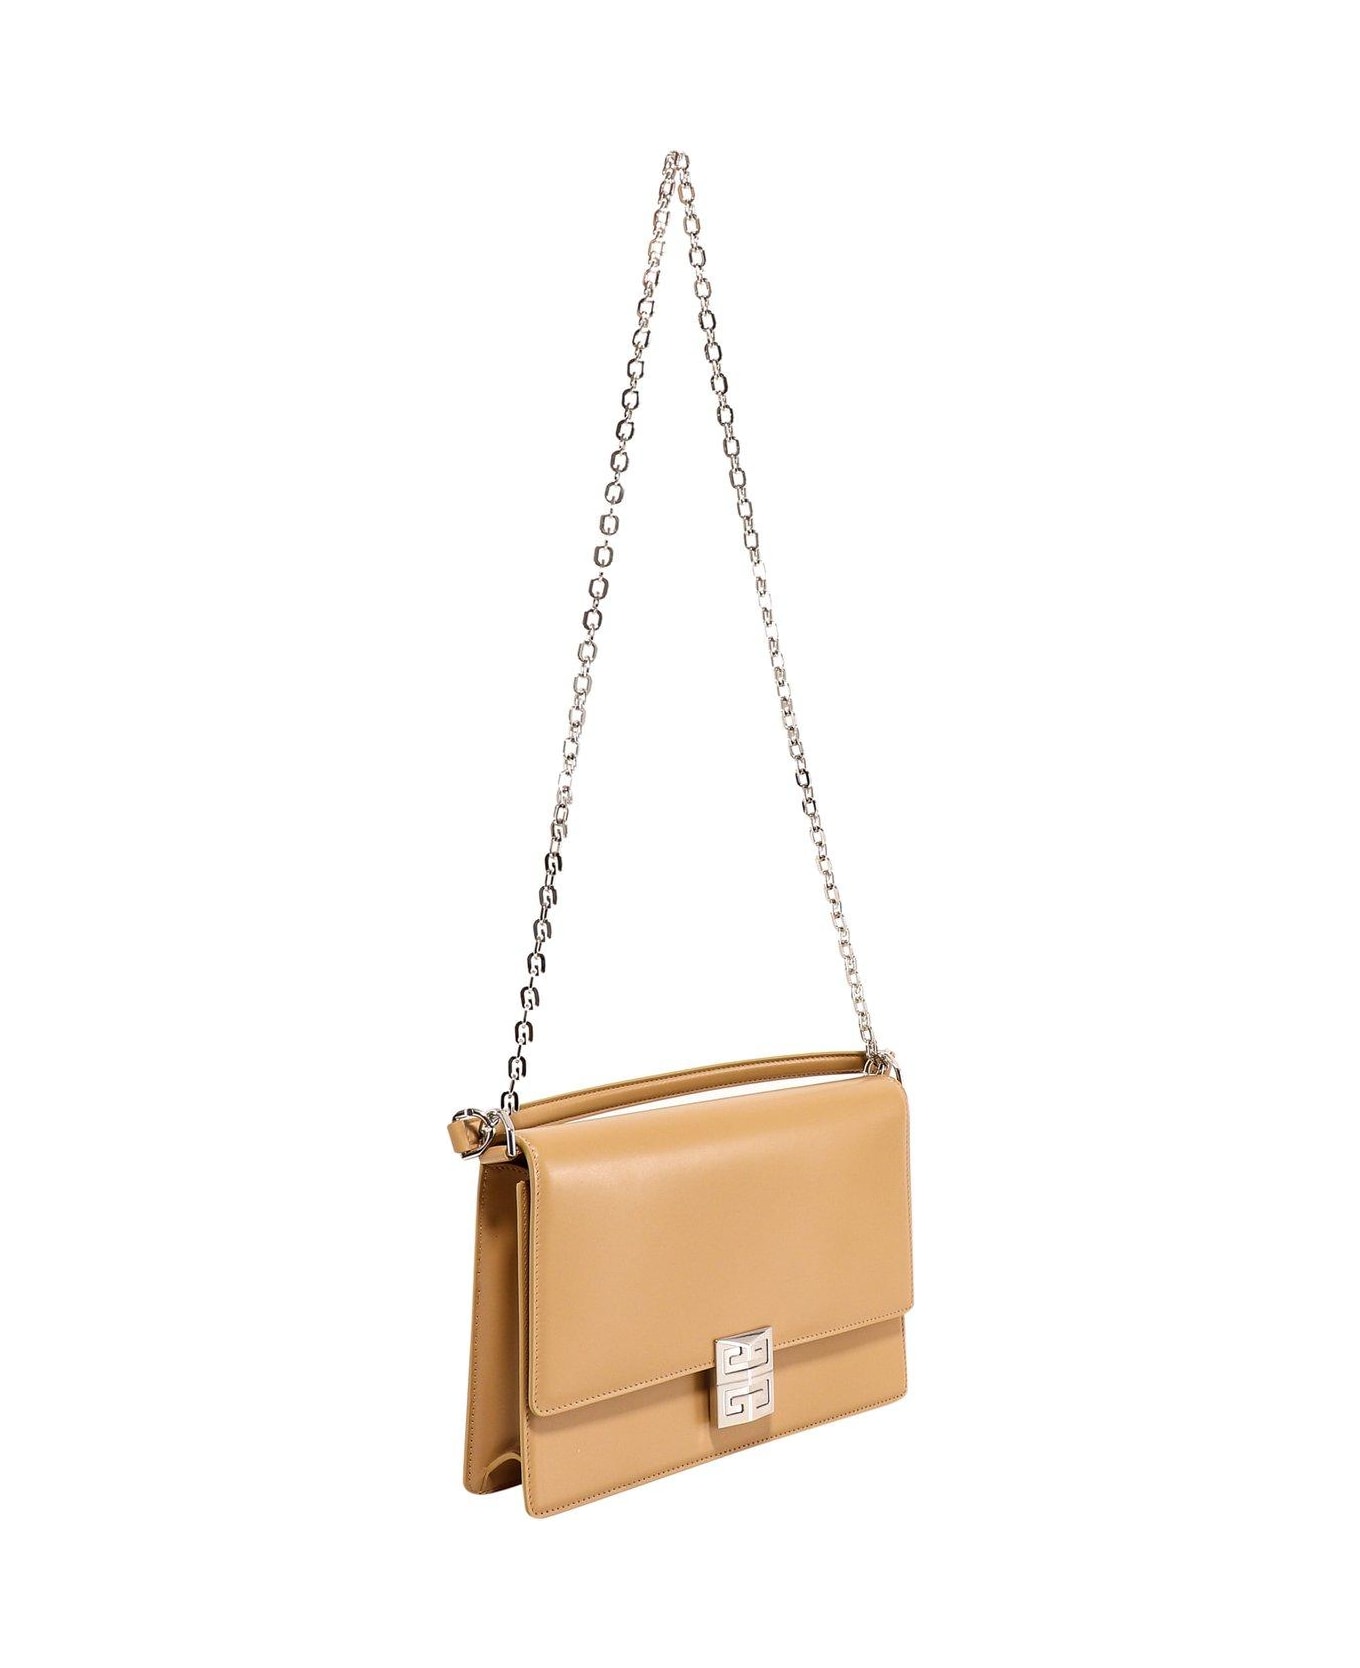 Givenchy Medium 4g Crossbody Bag - BEIGE